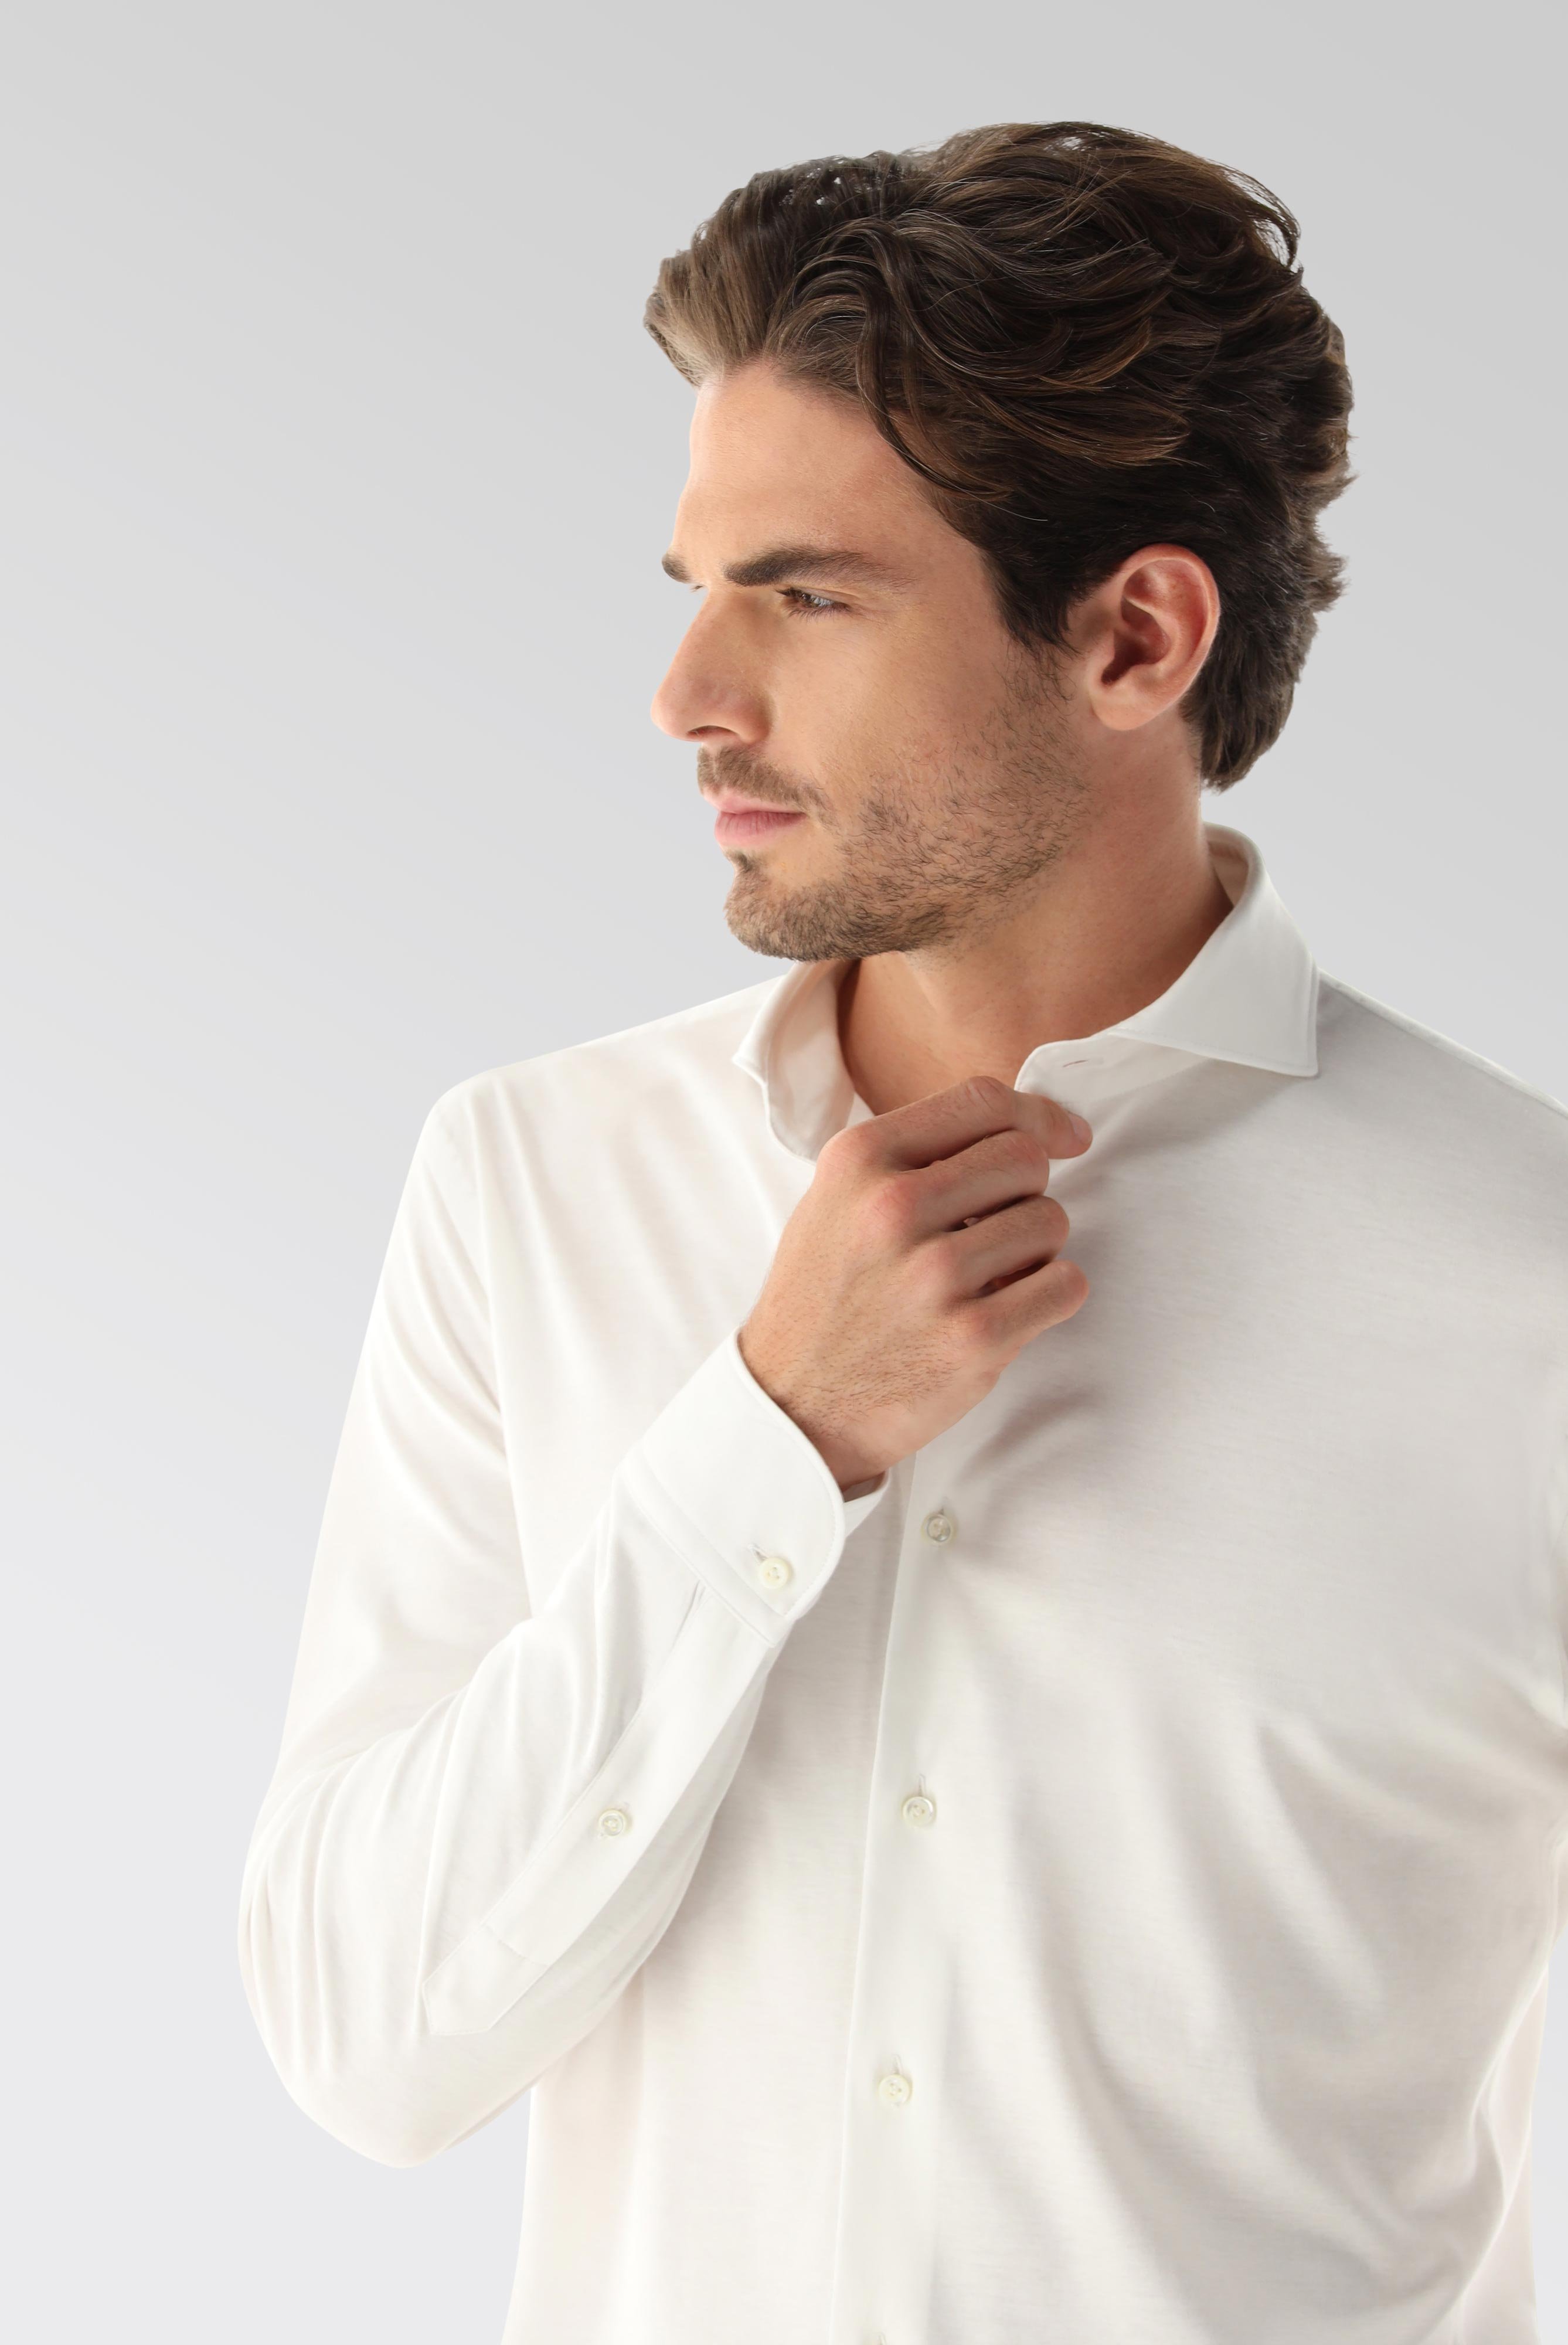 Bügelleichte Hemden+Jersey Hemd mit glänzender Optik Tailor Fit+20.1683.UC.180031.000.S